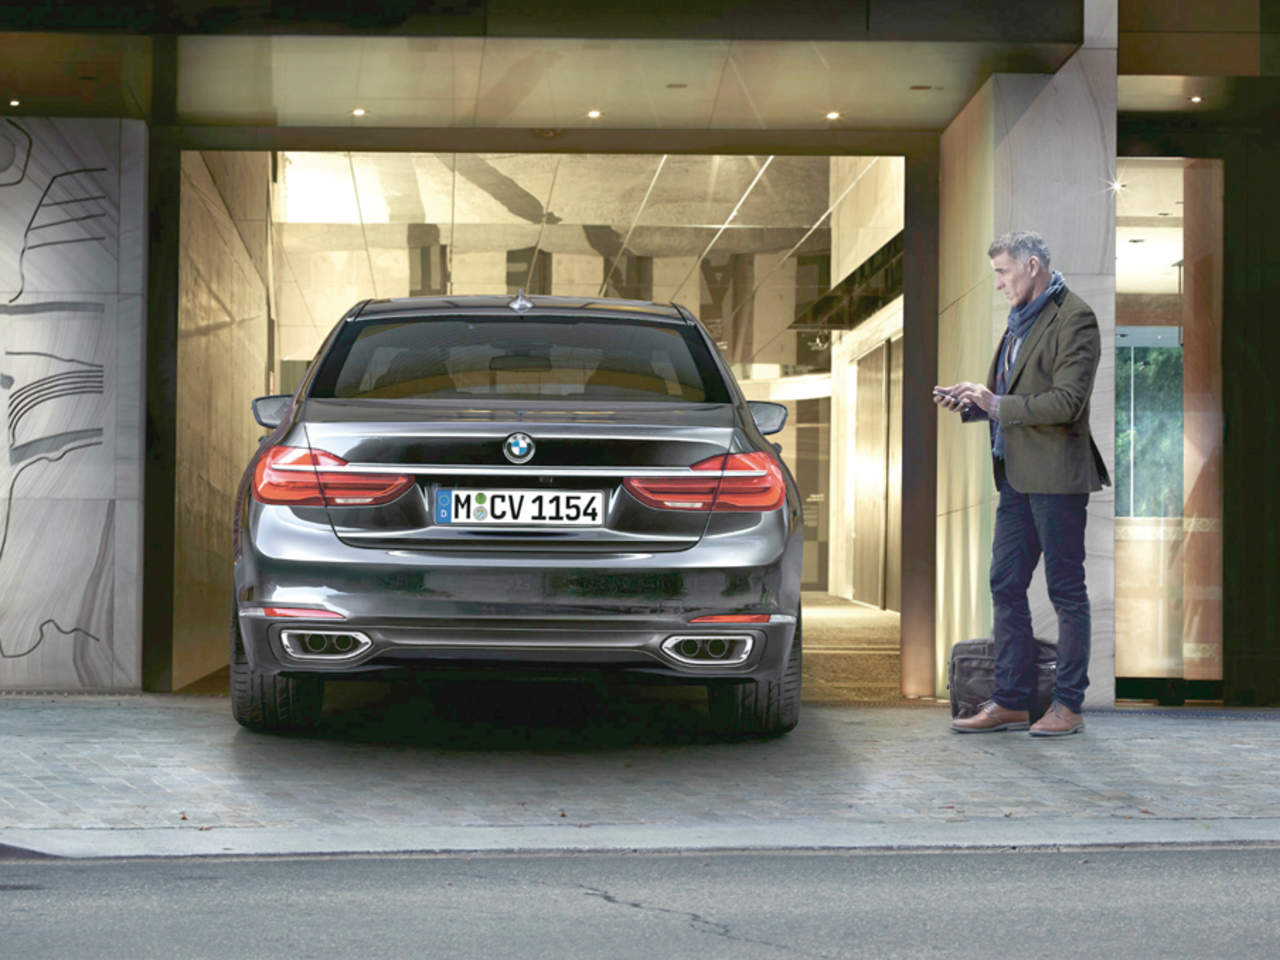 Ciencia BMW llega a acuerdo con IBM para usar su tecnología de inteligencia artificial en sus futuros modelos de coche. Foto: BMW